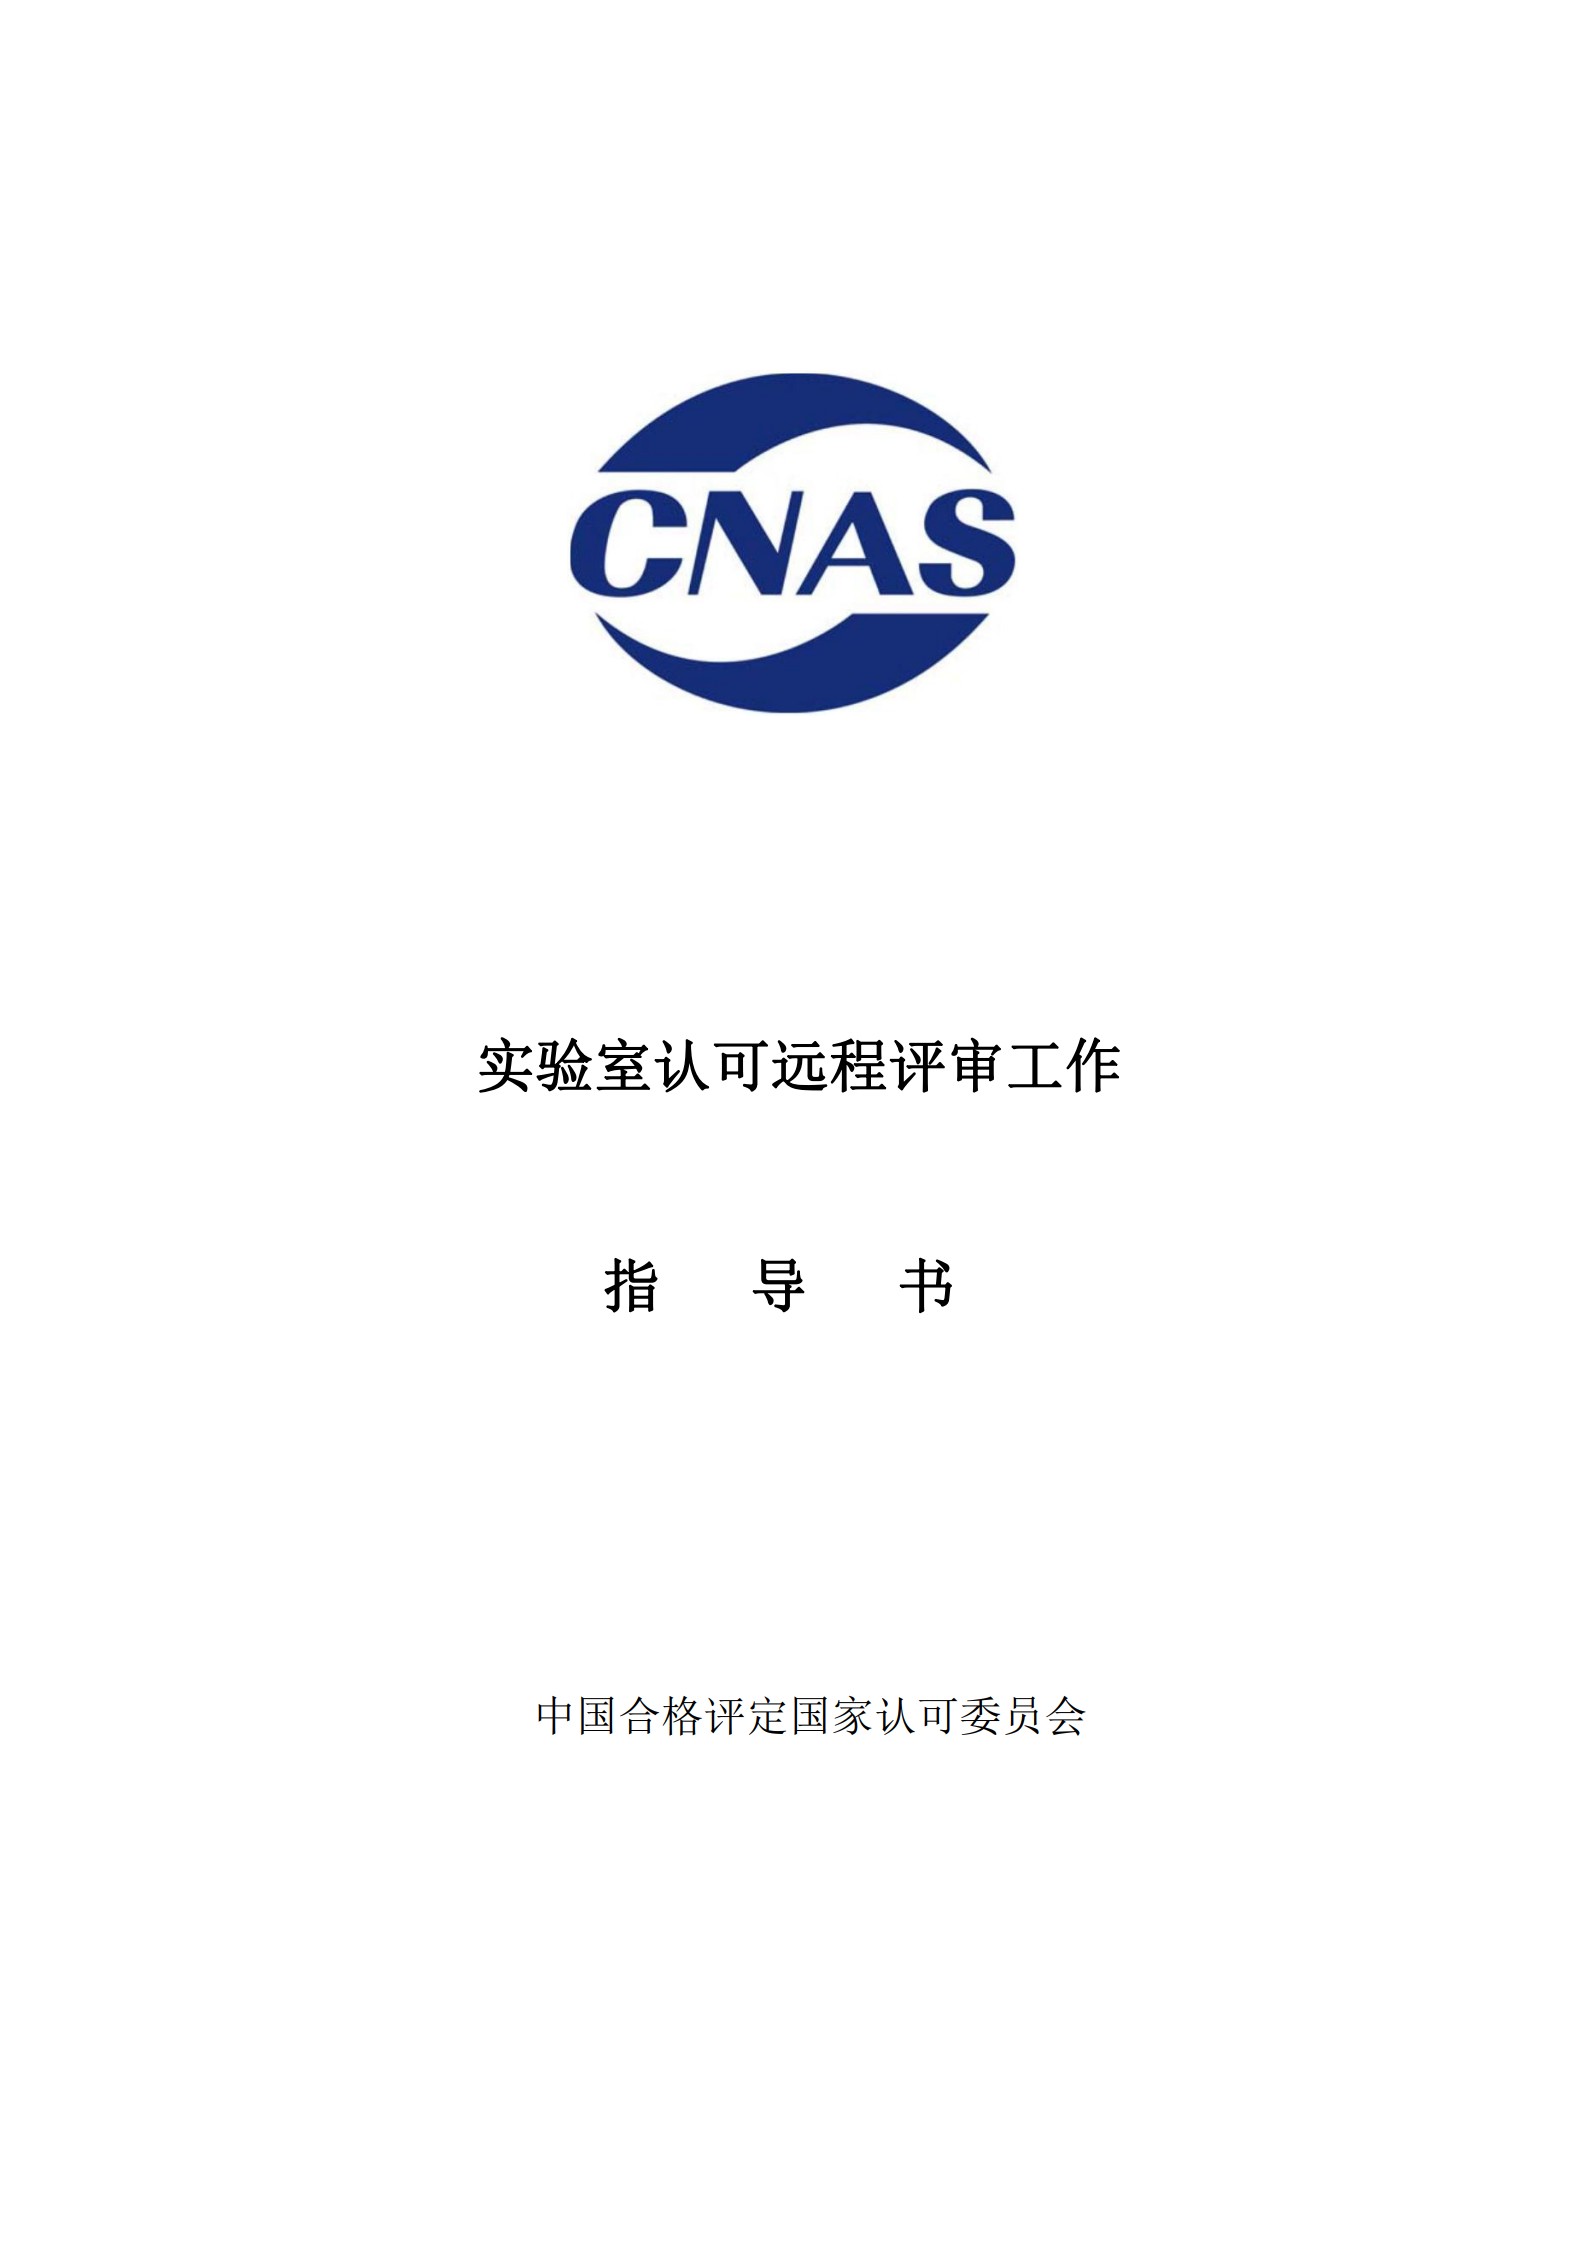 CNAS-WI14-14D0 实验室认可远程评审工作指导书_1.jpg